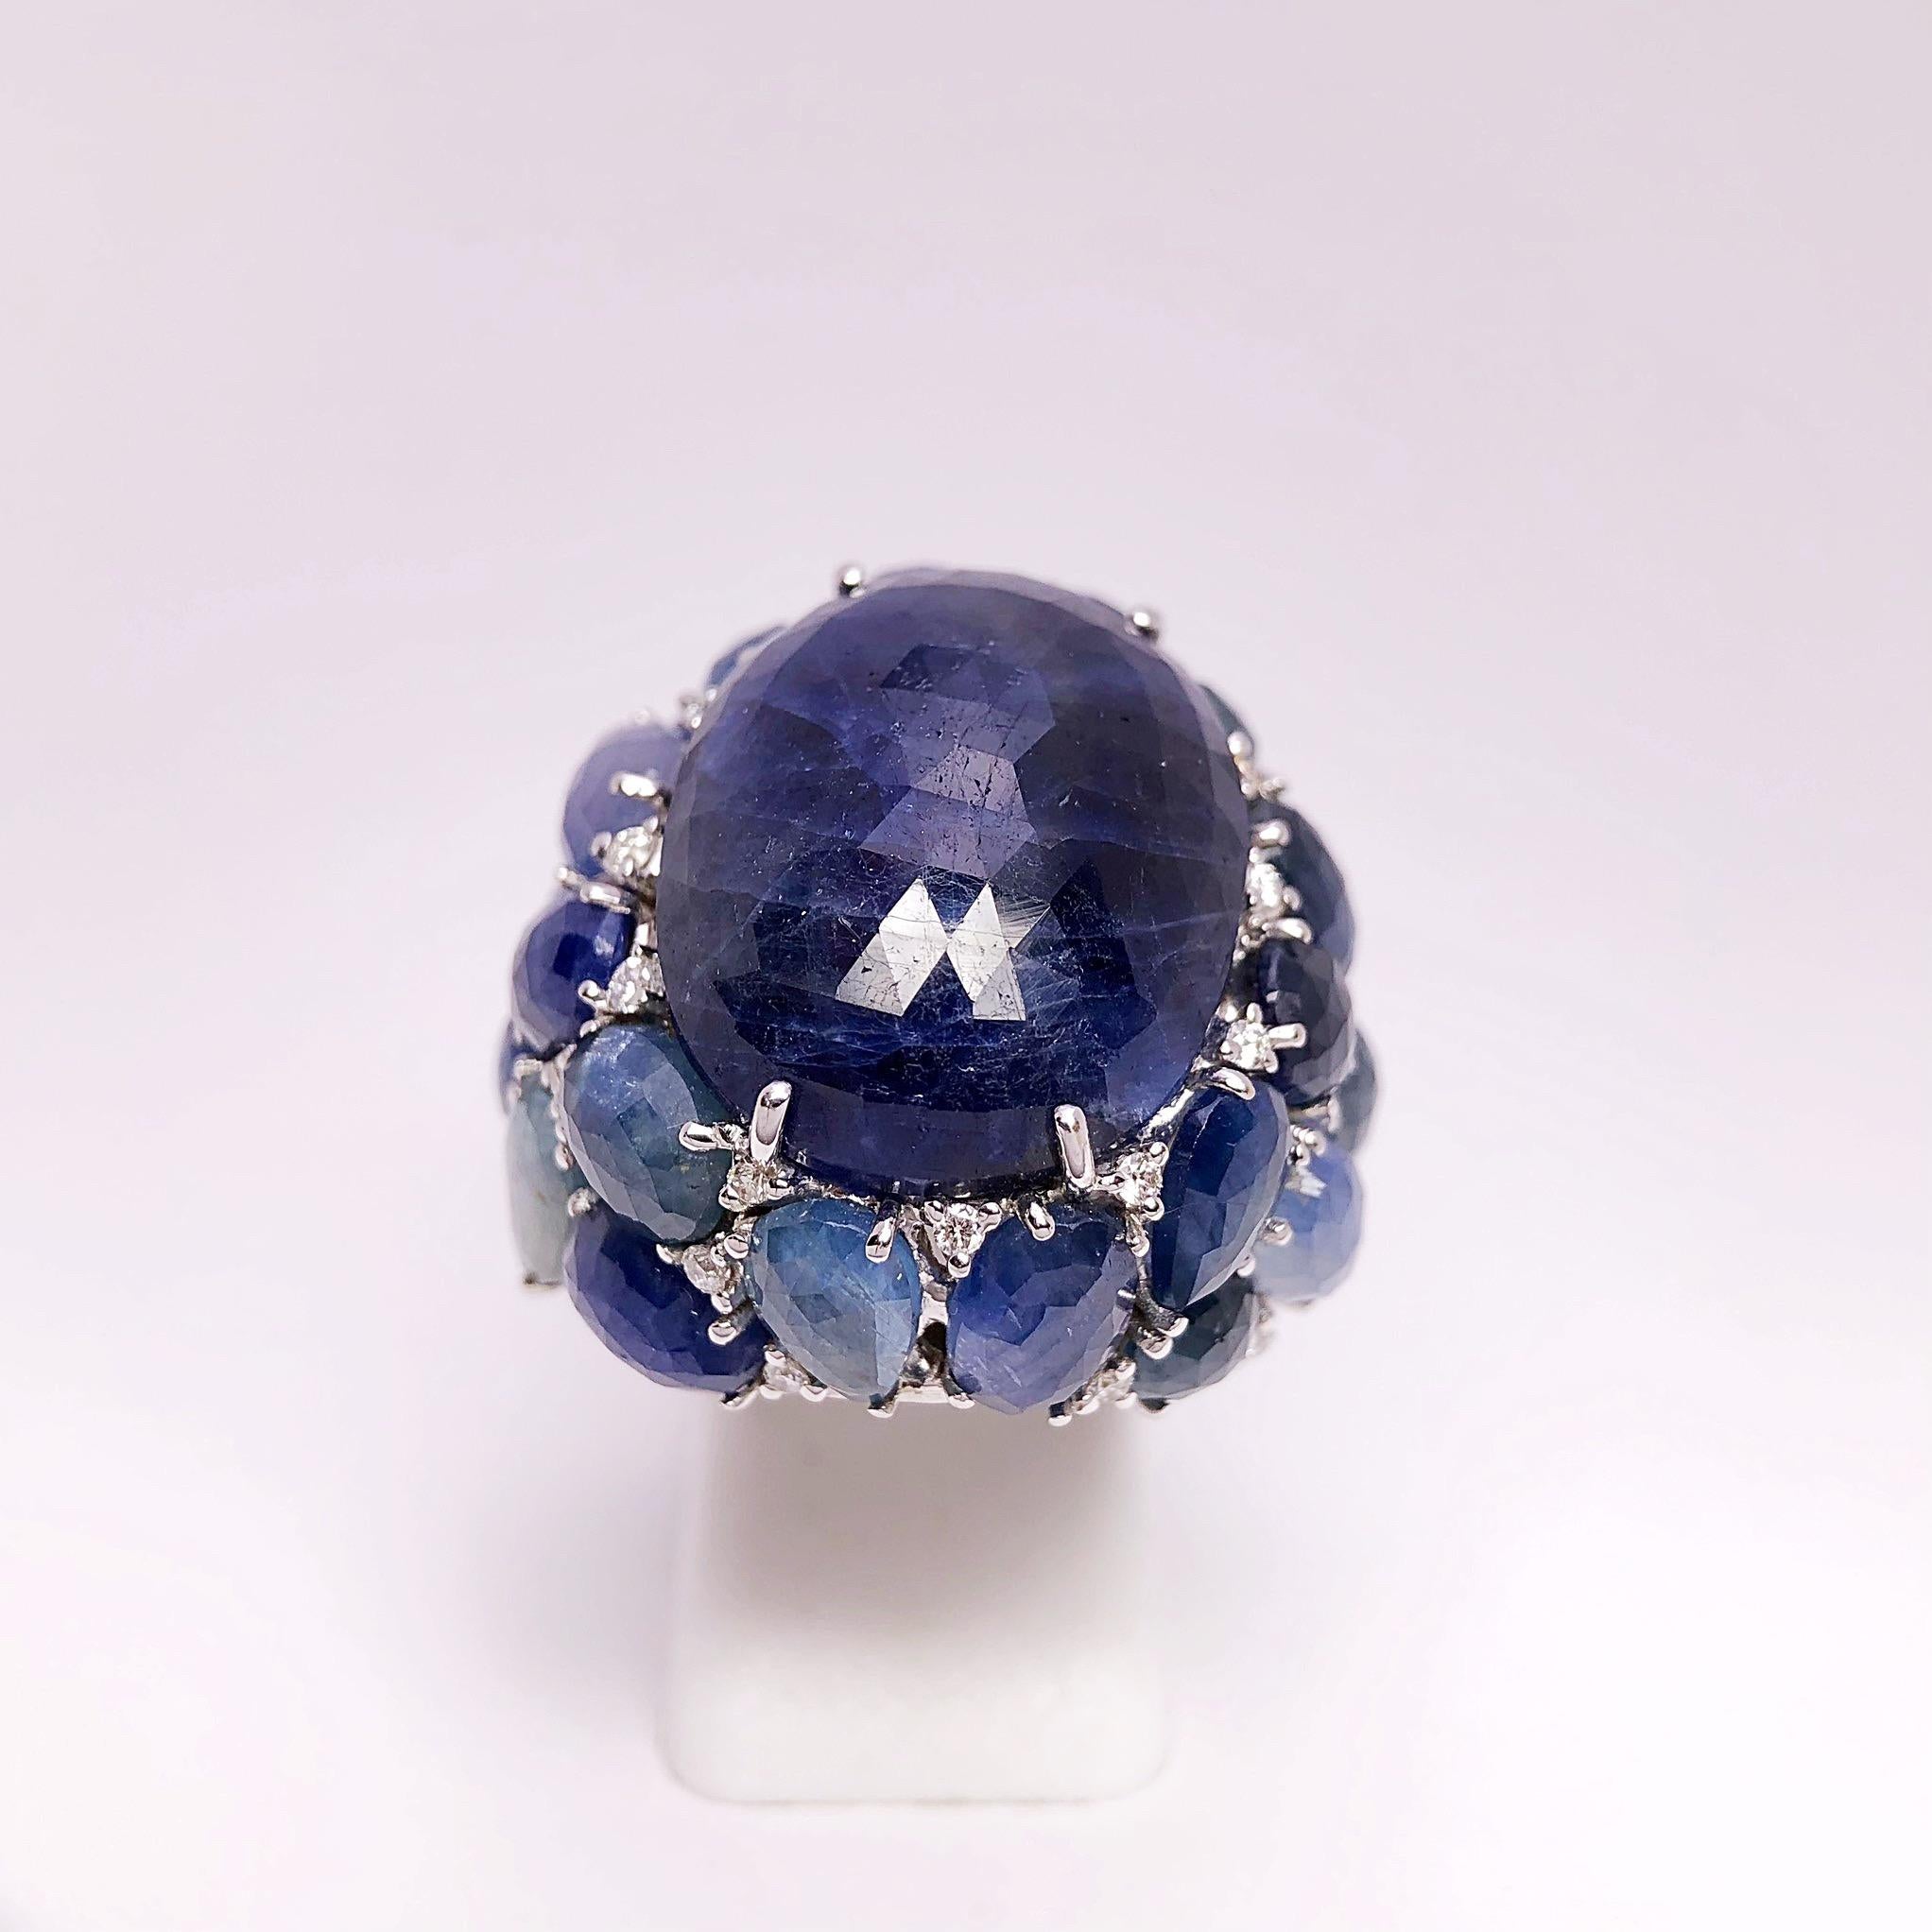 Creado por Giovanni Ferraris de Italia , este anillo de zafiro es una obra de arte. El zafiro opaco ovalado azul oscuro central es un cabachón facetado briolette que mide 22 mm x 16,5 mm. . El anillo tiene un engaste espectacular diseñado con azul